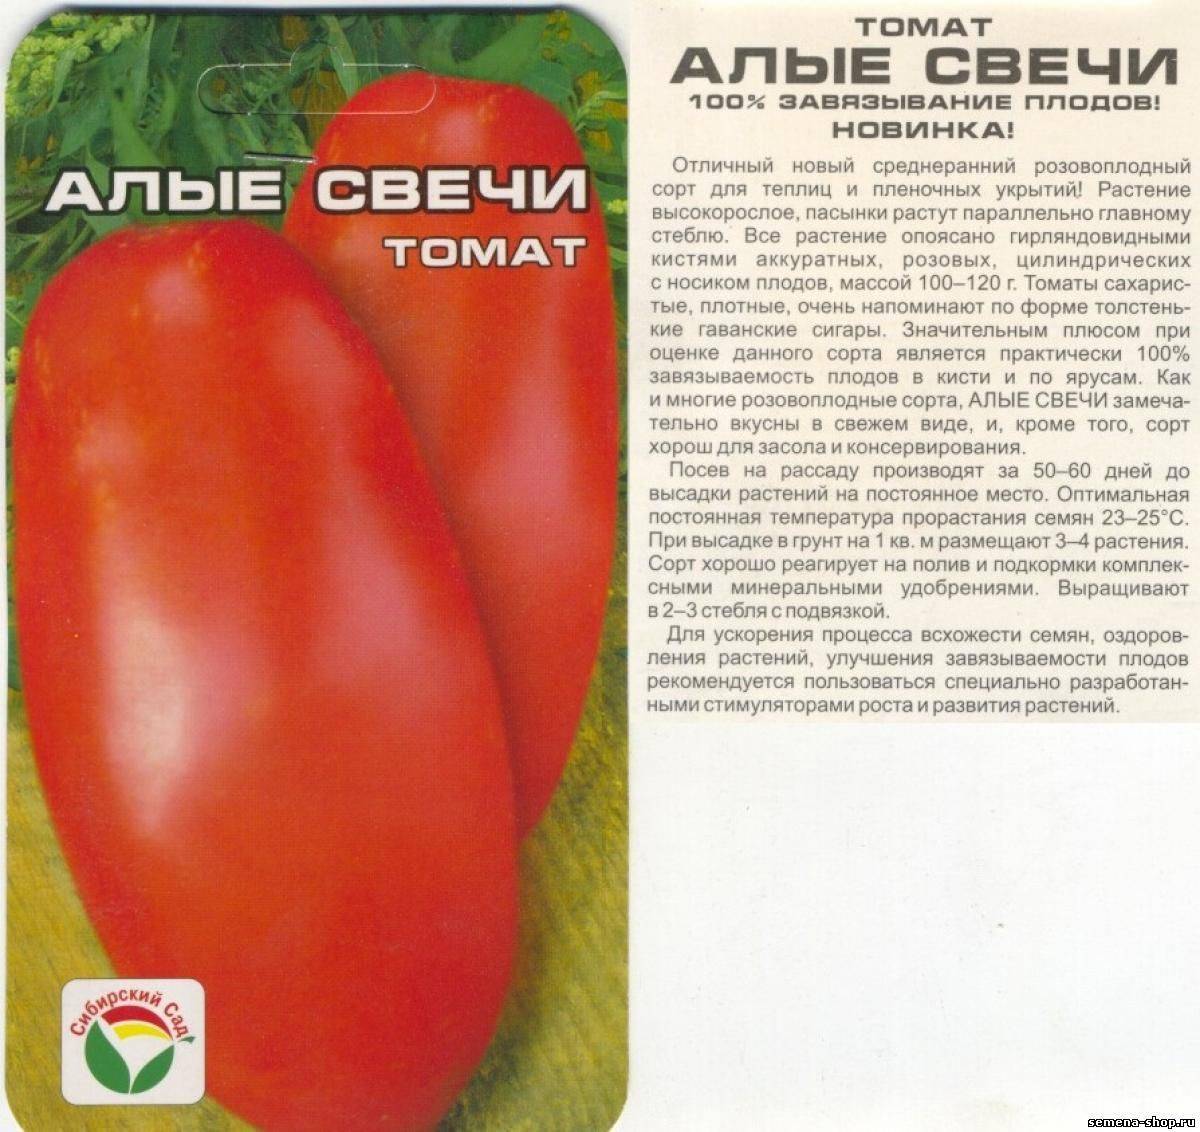 Томат чибис: отзывы тех кто сажал помидоры об их урожайности, фото семян, характеристика и описание